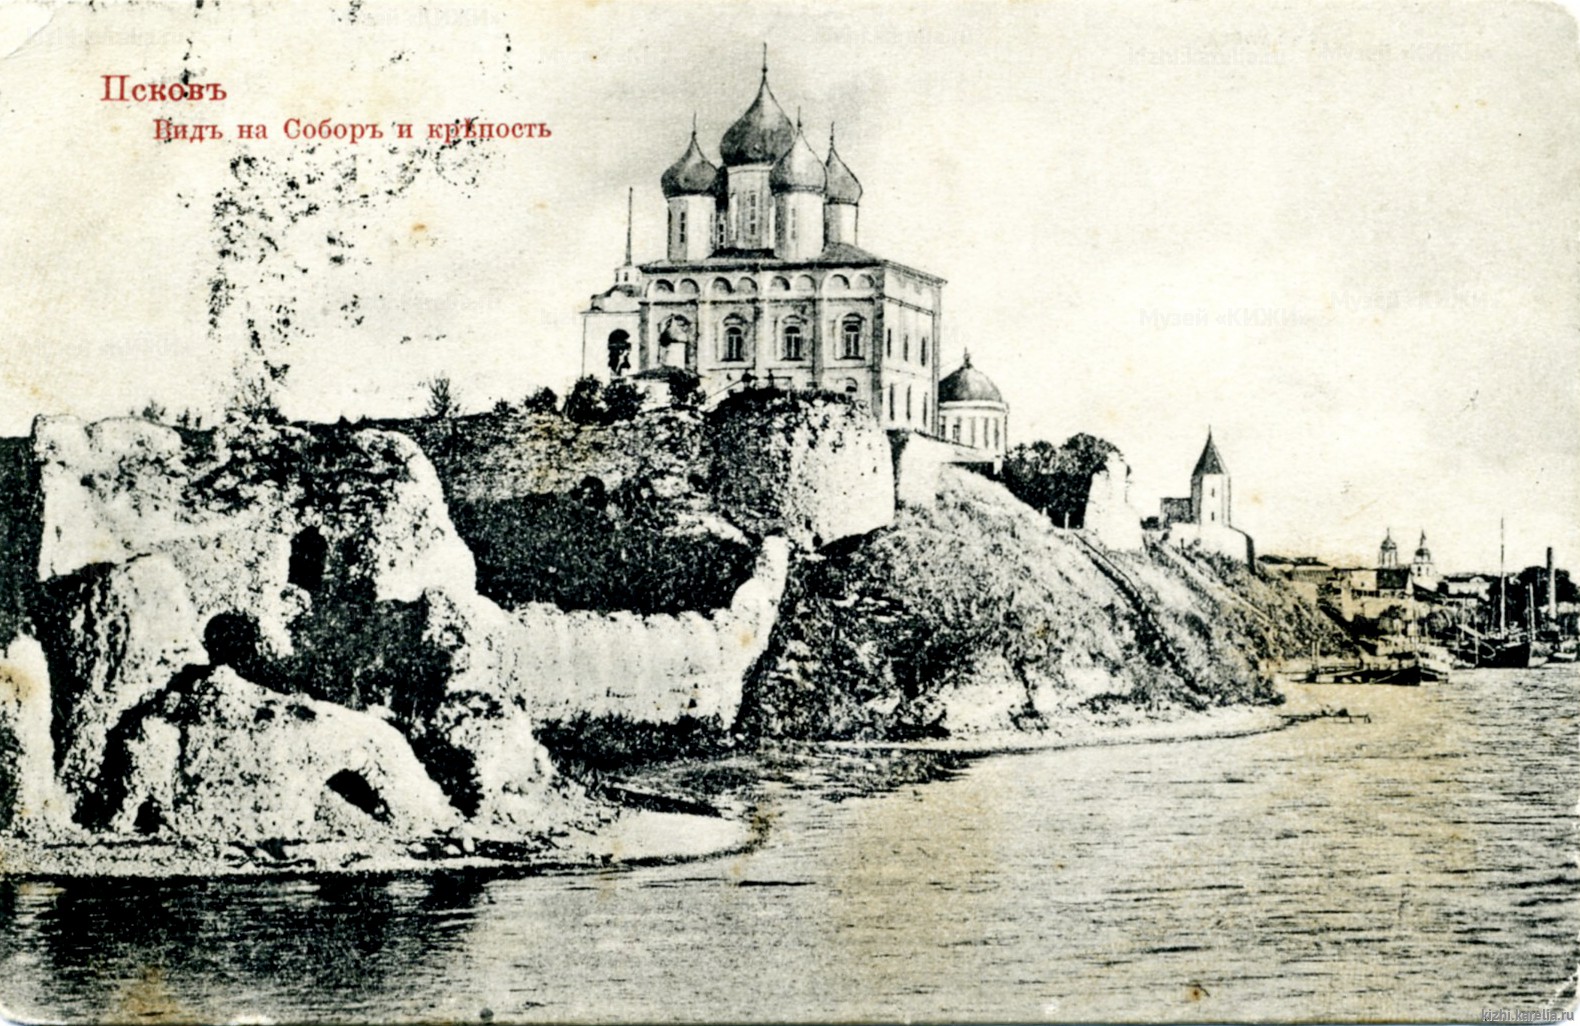 Псков. Вид на собор и крепость